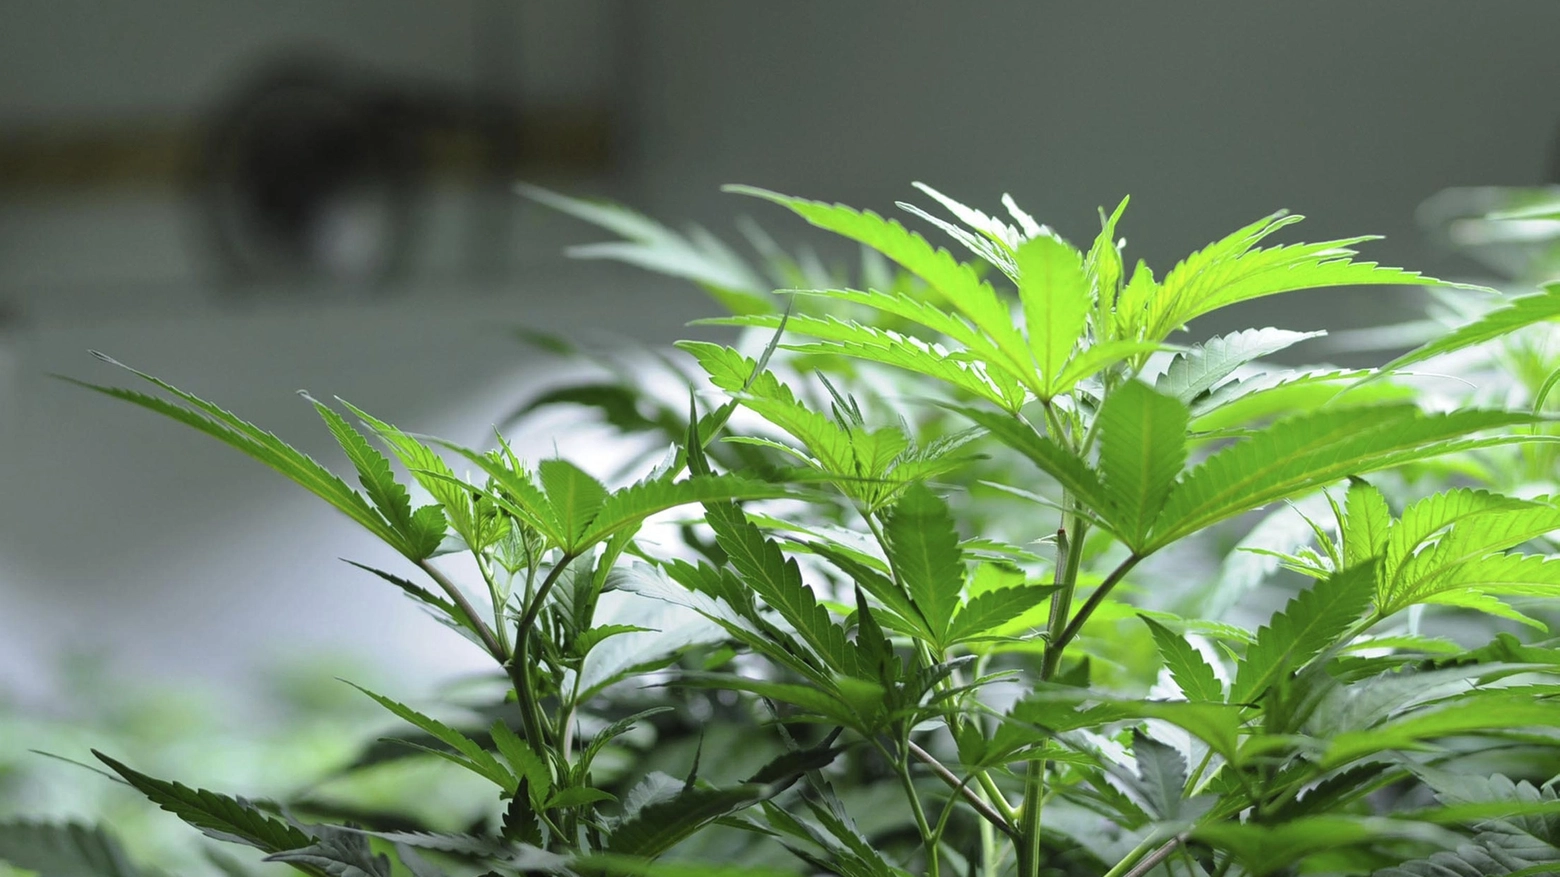 Nel casolare di Portomaggiore furono trovati 3 chili di marijuana